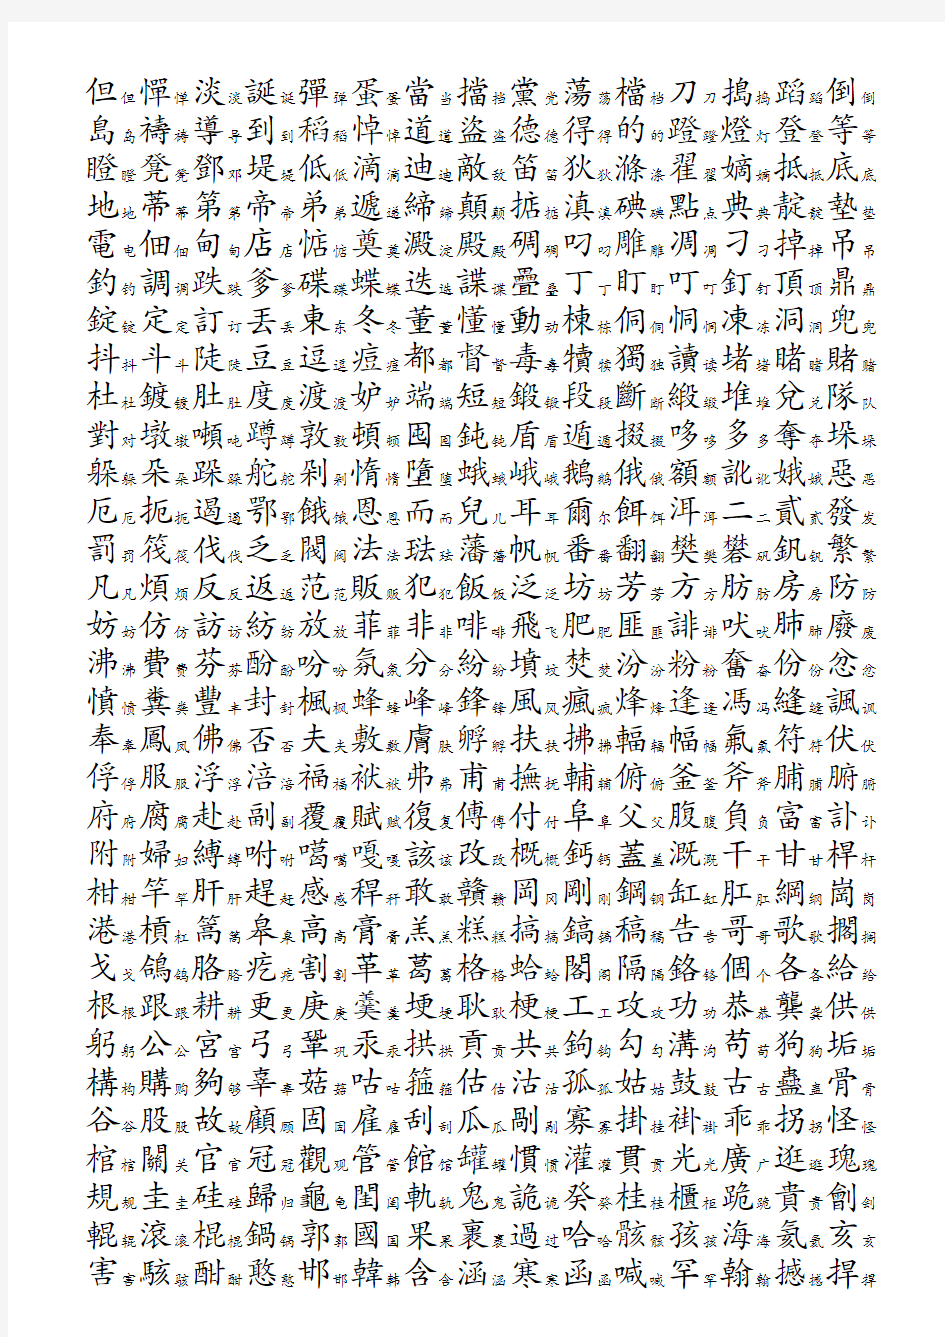 3754个常用汉字简繁对照表-拼音顺序[1][1]